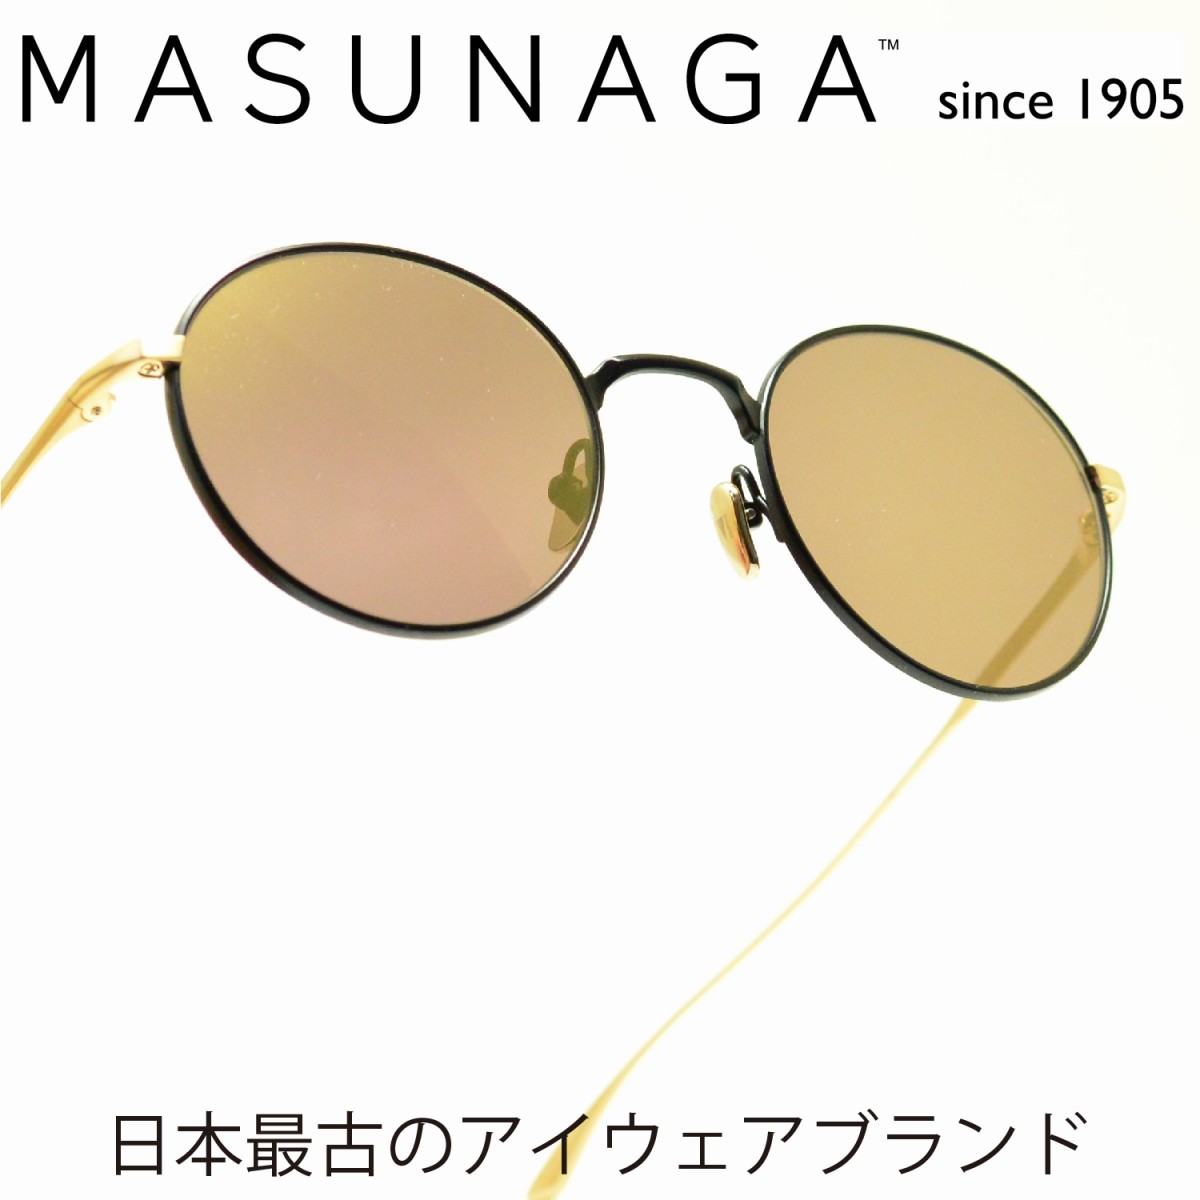 限定価格セール Masunaga Since1905 Wright Col S39メガネ 眼鏡 めがね メンズ レディース ブランド 人気 おすすめ フレーム 流行り 度付き レンズ 最安値に挑戦 Partage Mymorocco Ma